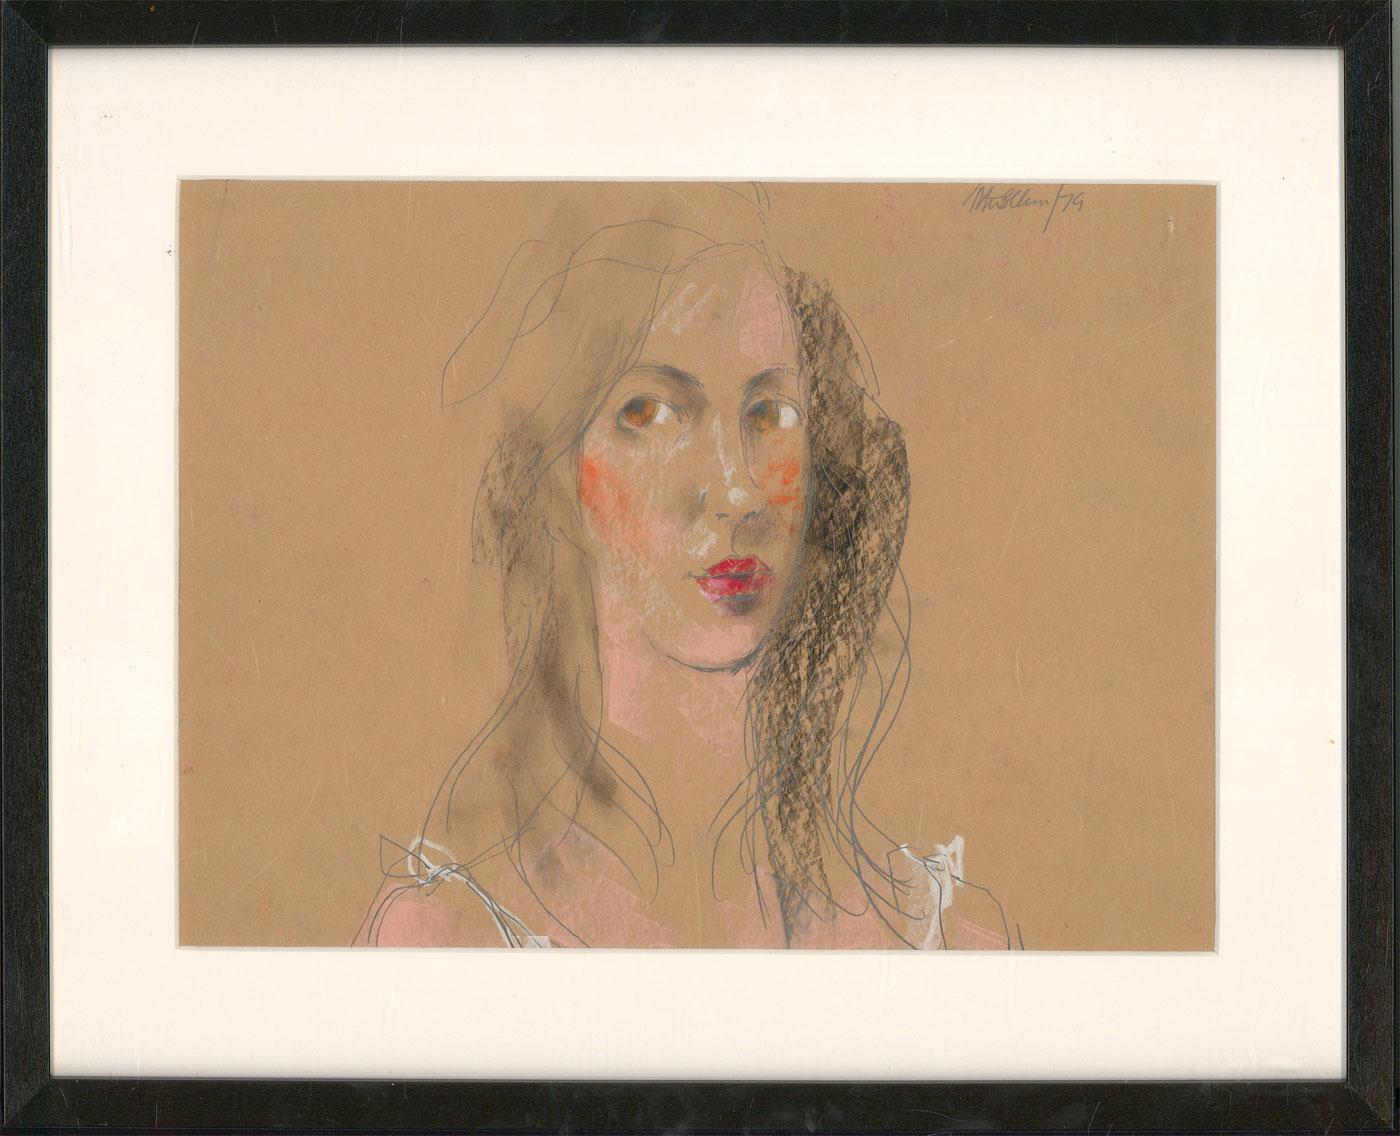 Un magnifique portrait de jeune femme réalisé par l'artiste britannique classé Peter Collins. Ici, il a saisi la beauté sans effort du modèle à l'aide d'un petit nombre de traits de crayon expressifs et de taches de couleur. Très bien présenté dans